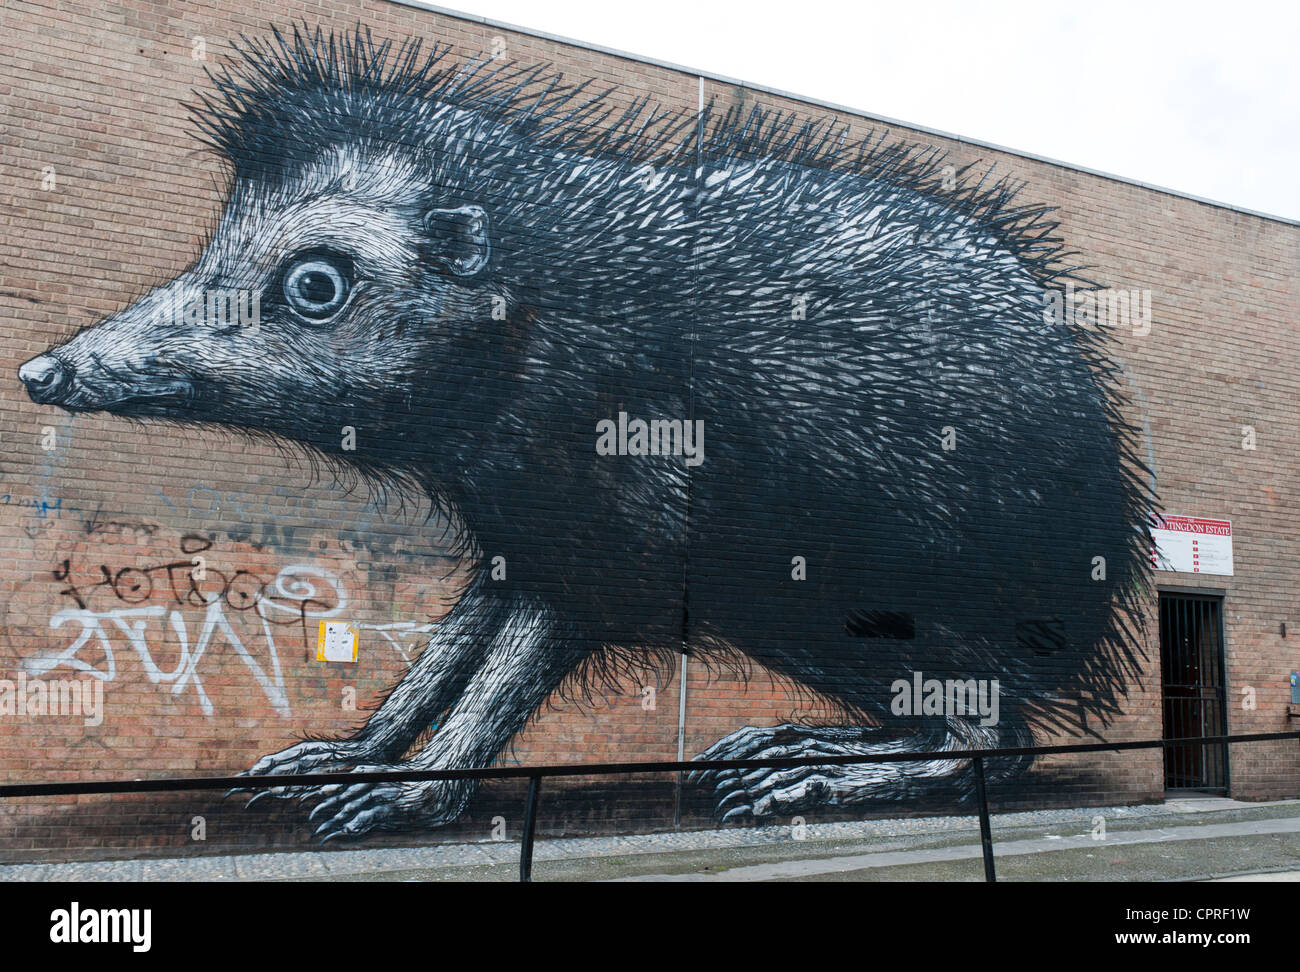 Street Art immagine di un riccio dall'artista Roa Foto Stock